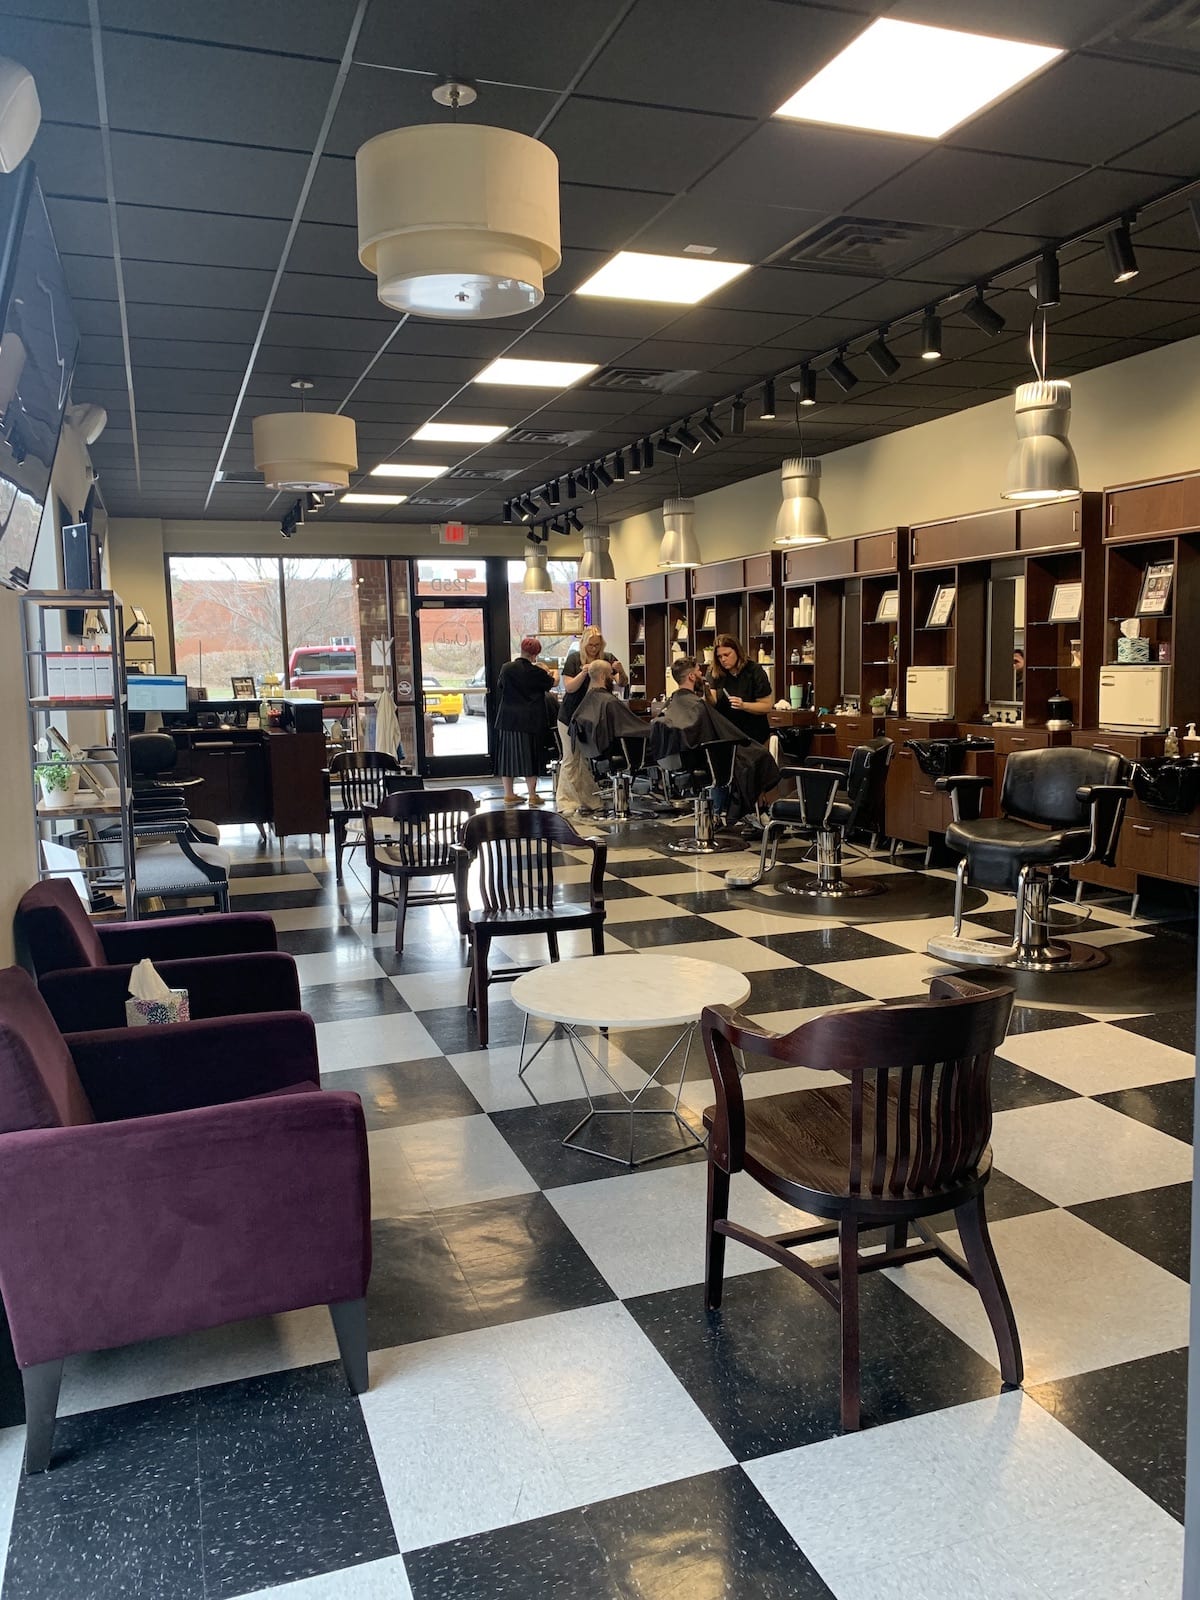 Inside Uncle's Hendersonville barbershop